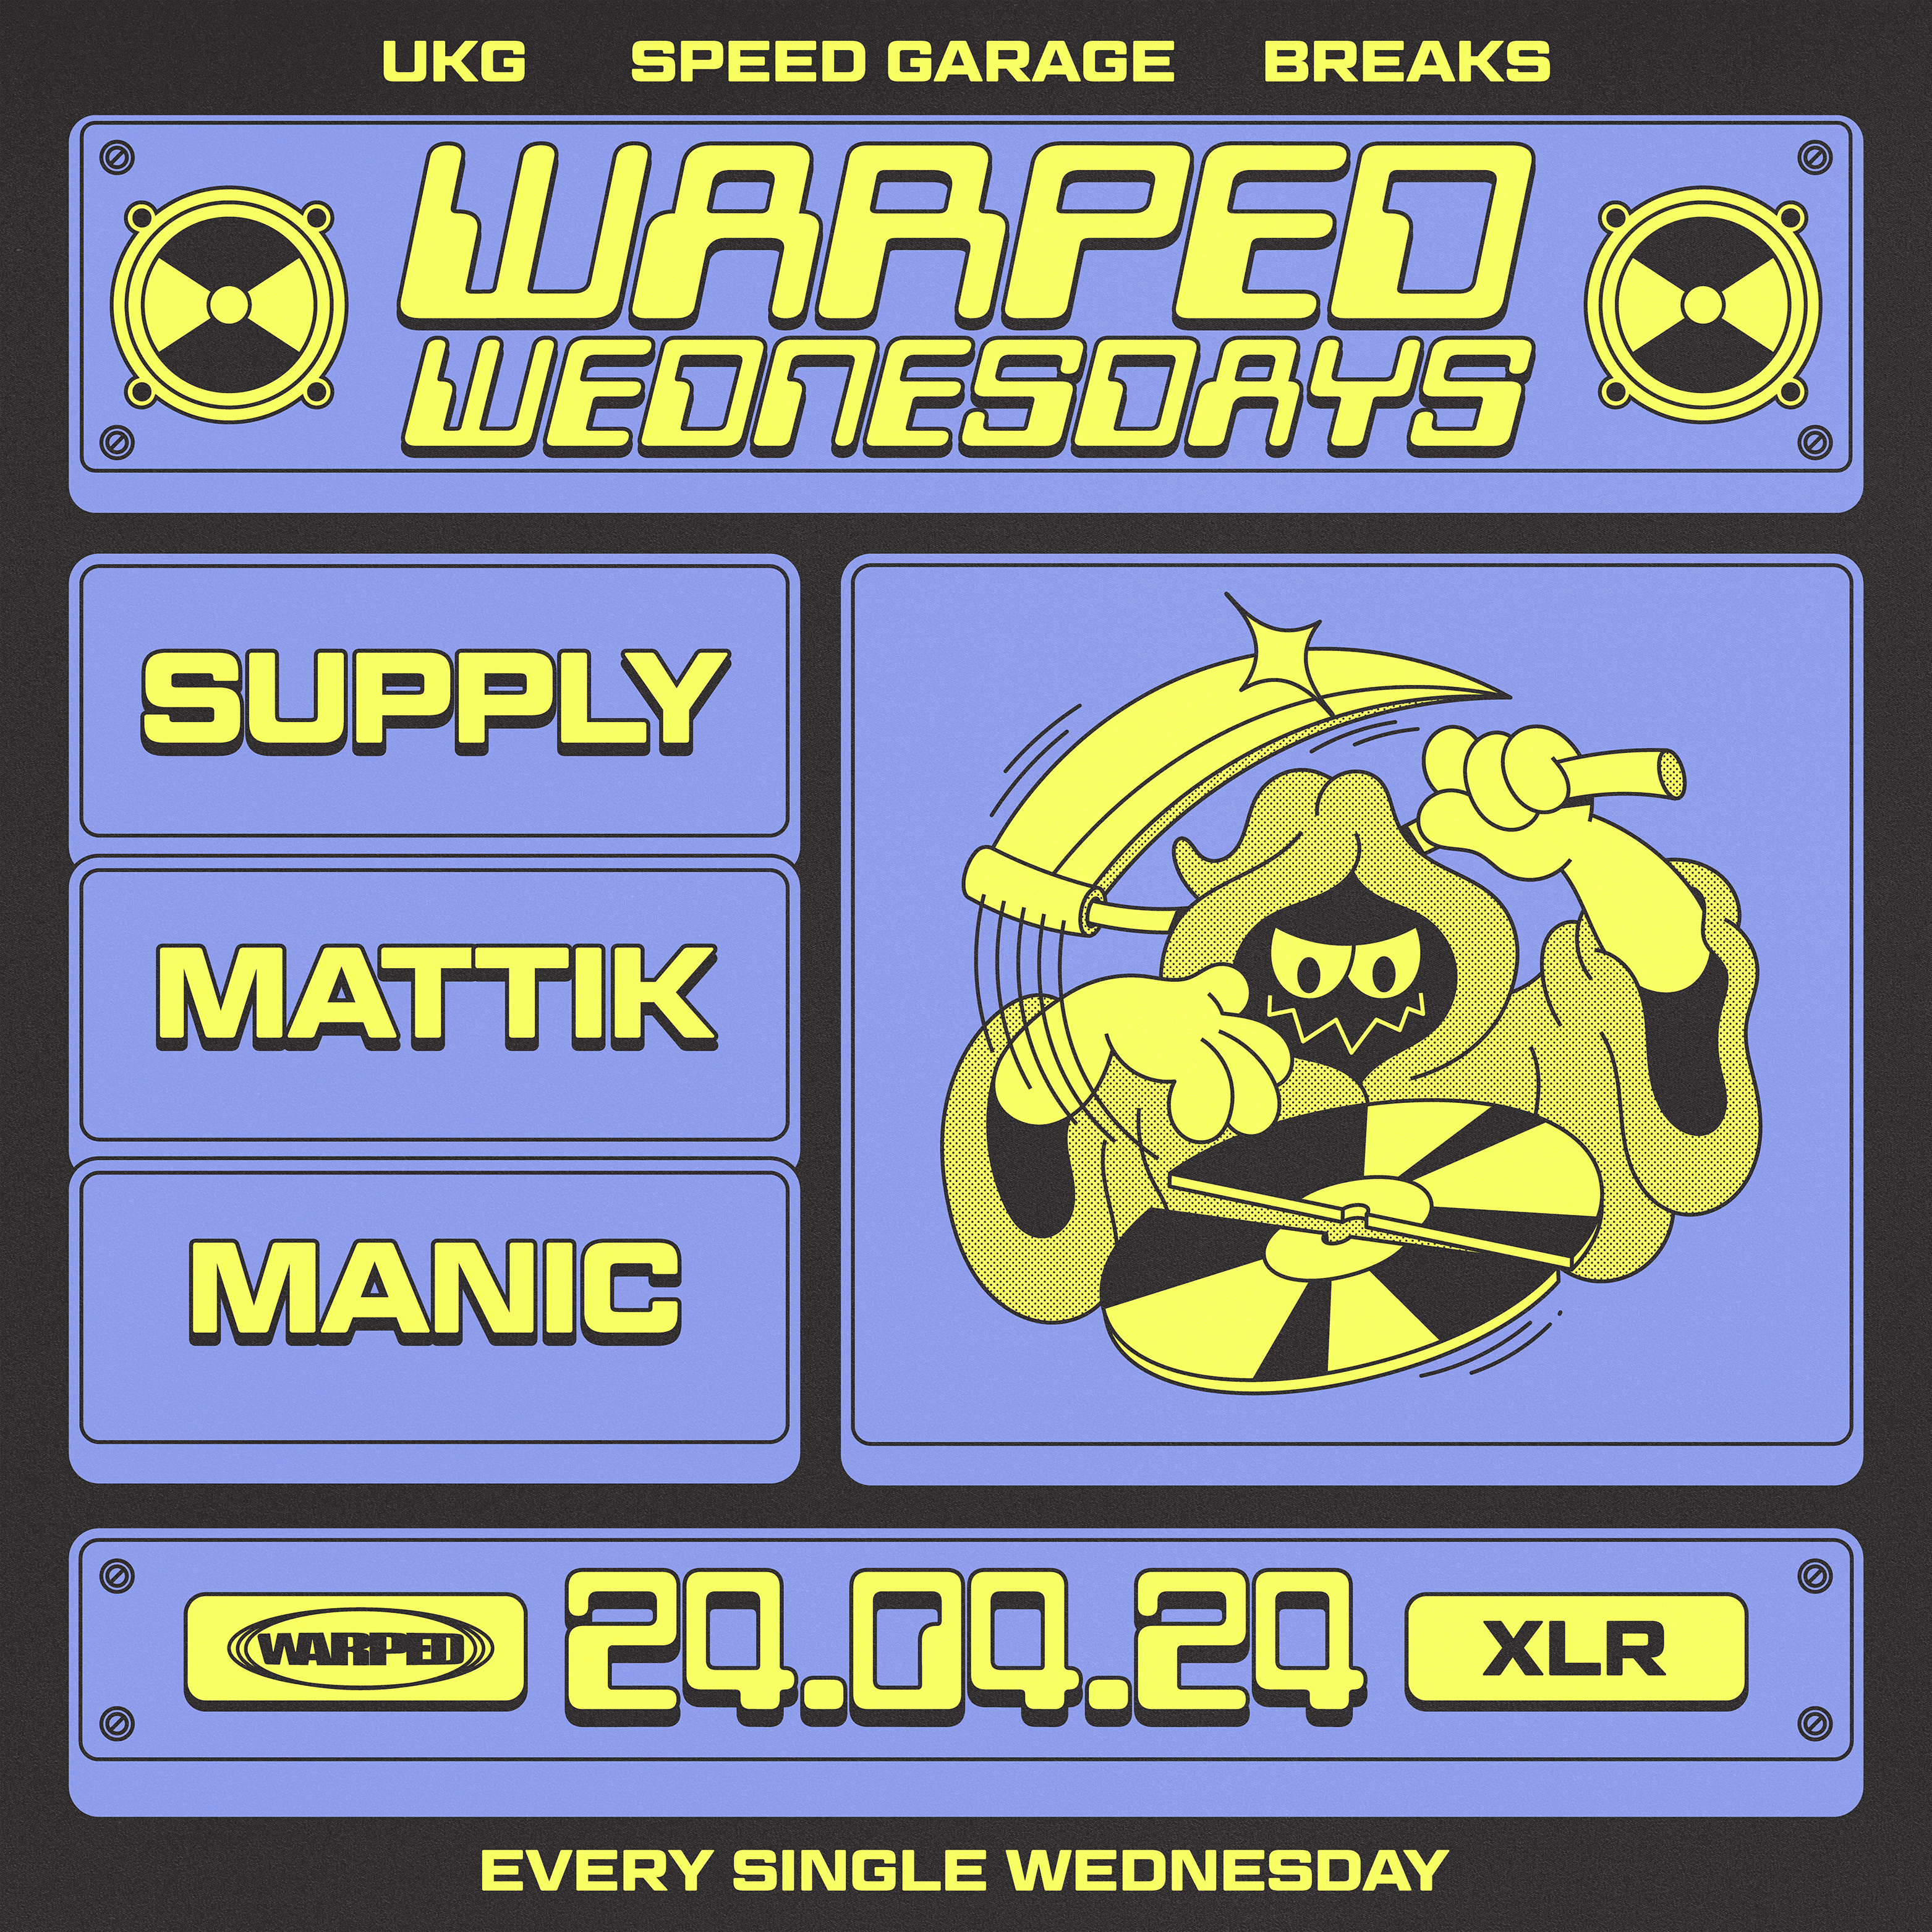 Warped Wednesdays: SUPPLY & Mattik - UK Garage, Speed Garage + more - フライヤー表